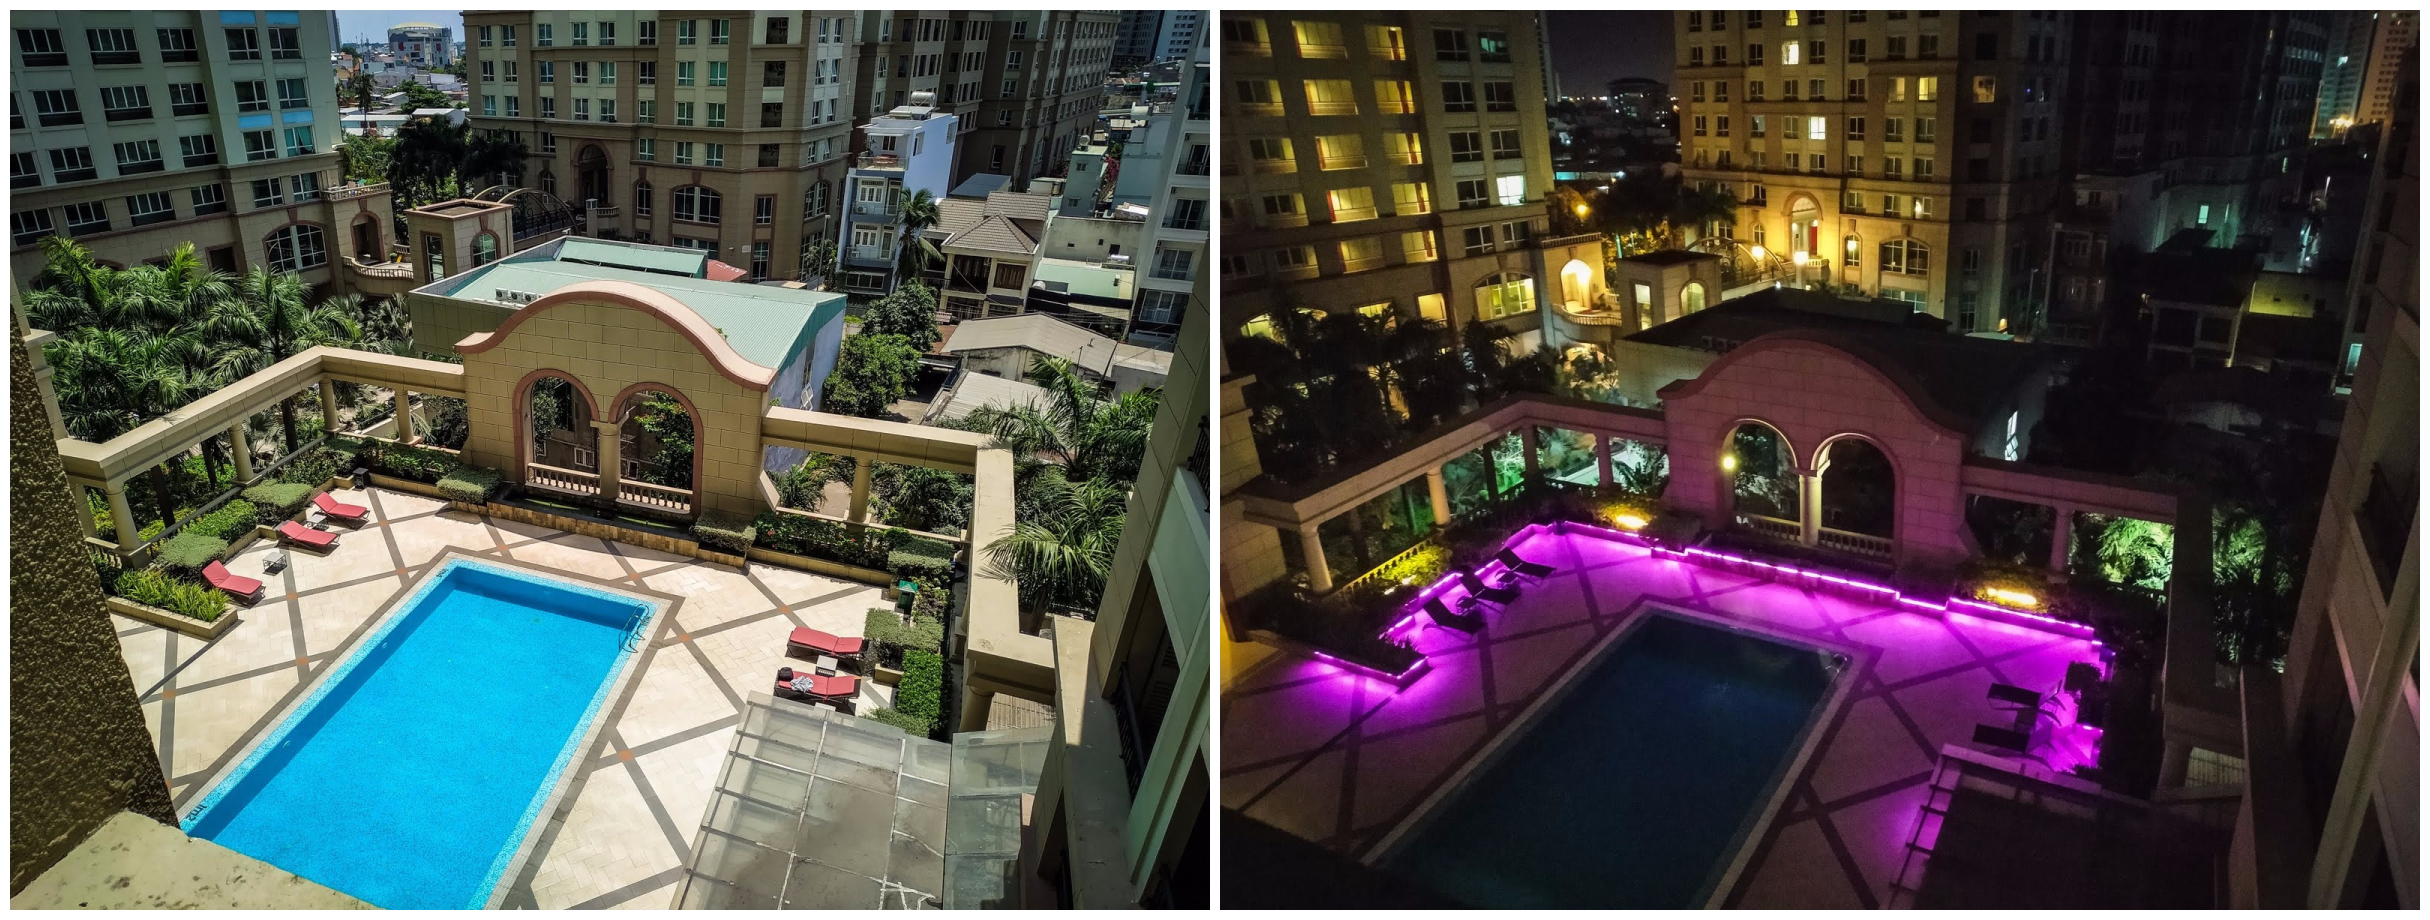 bazén v hotelu v Ho Či Minově městě ve dne a v noci